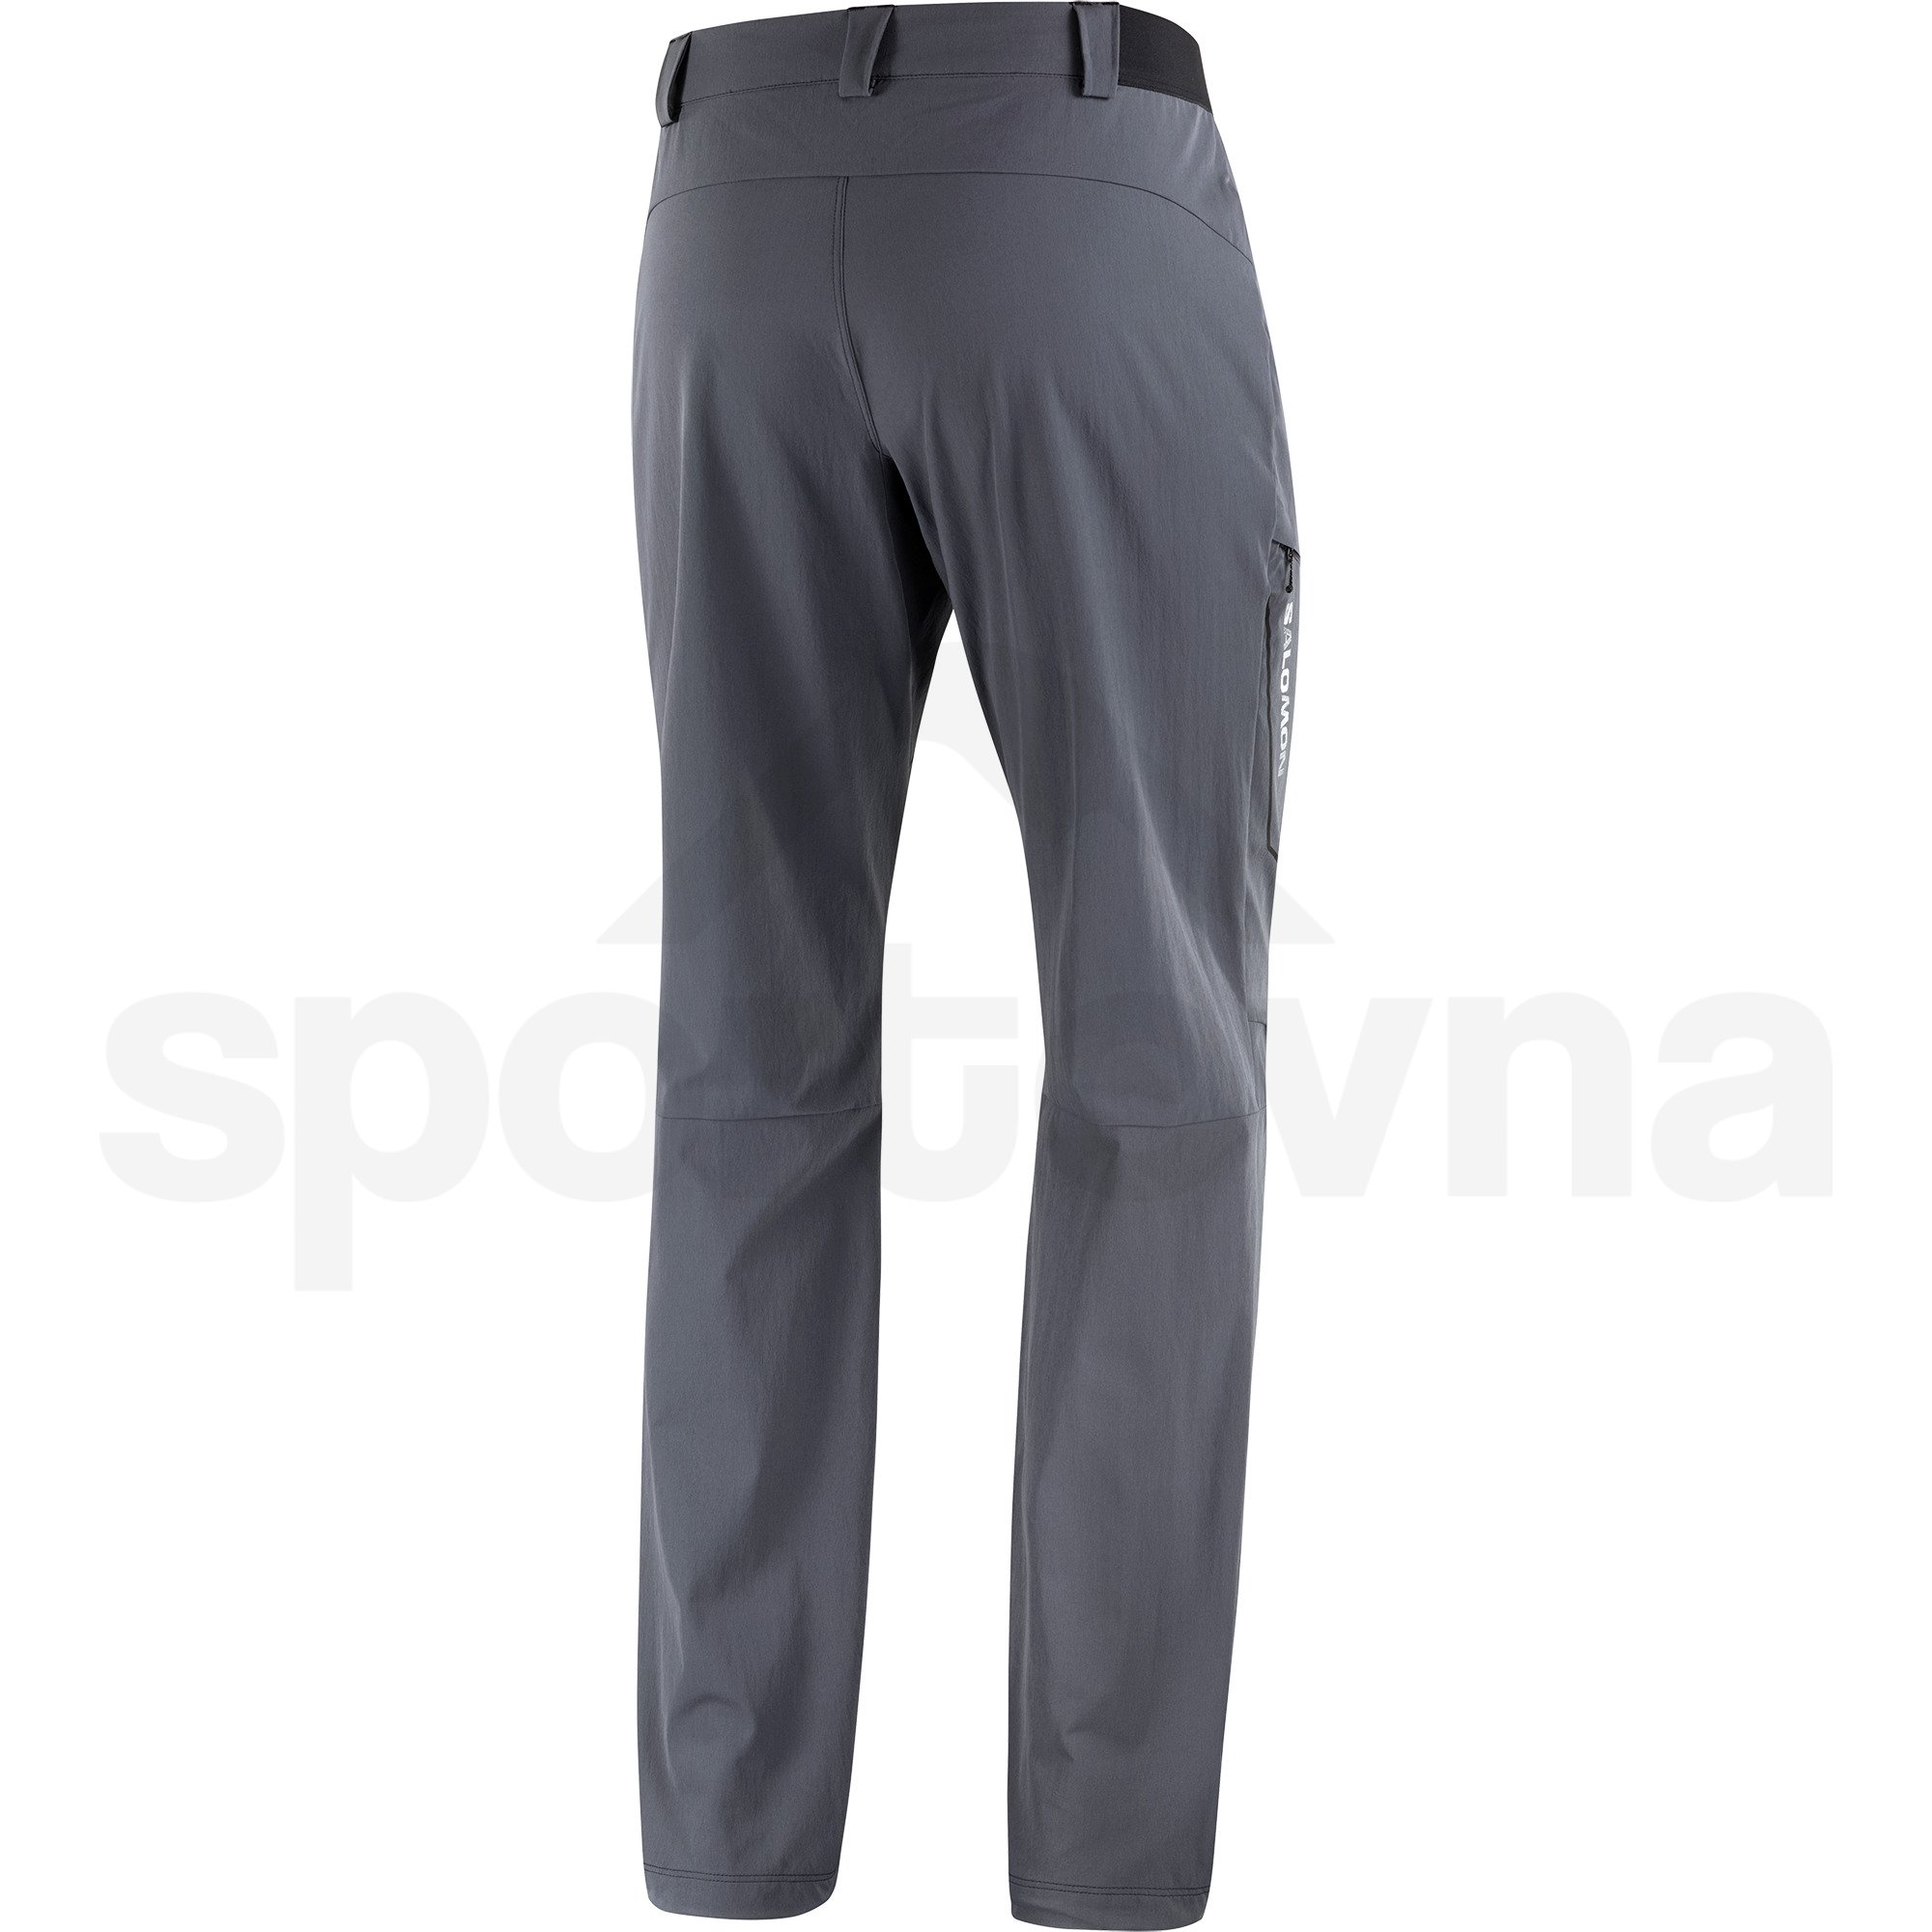 Kalhoty Salomon Wayfarer Pants M - šedá (standardní délka)